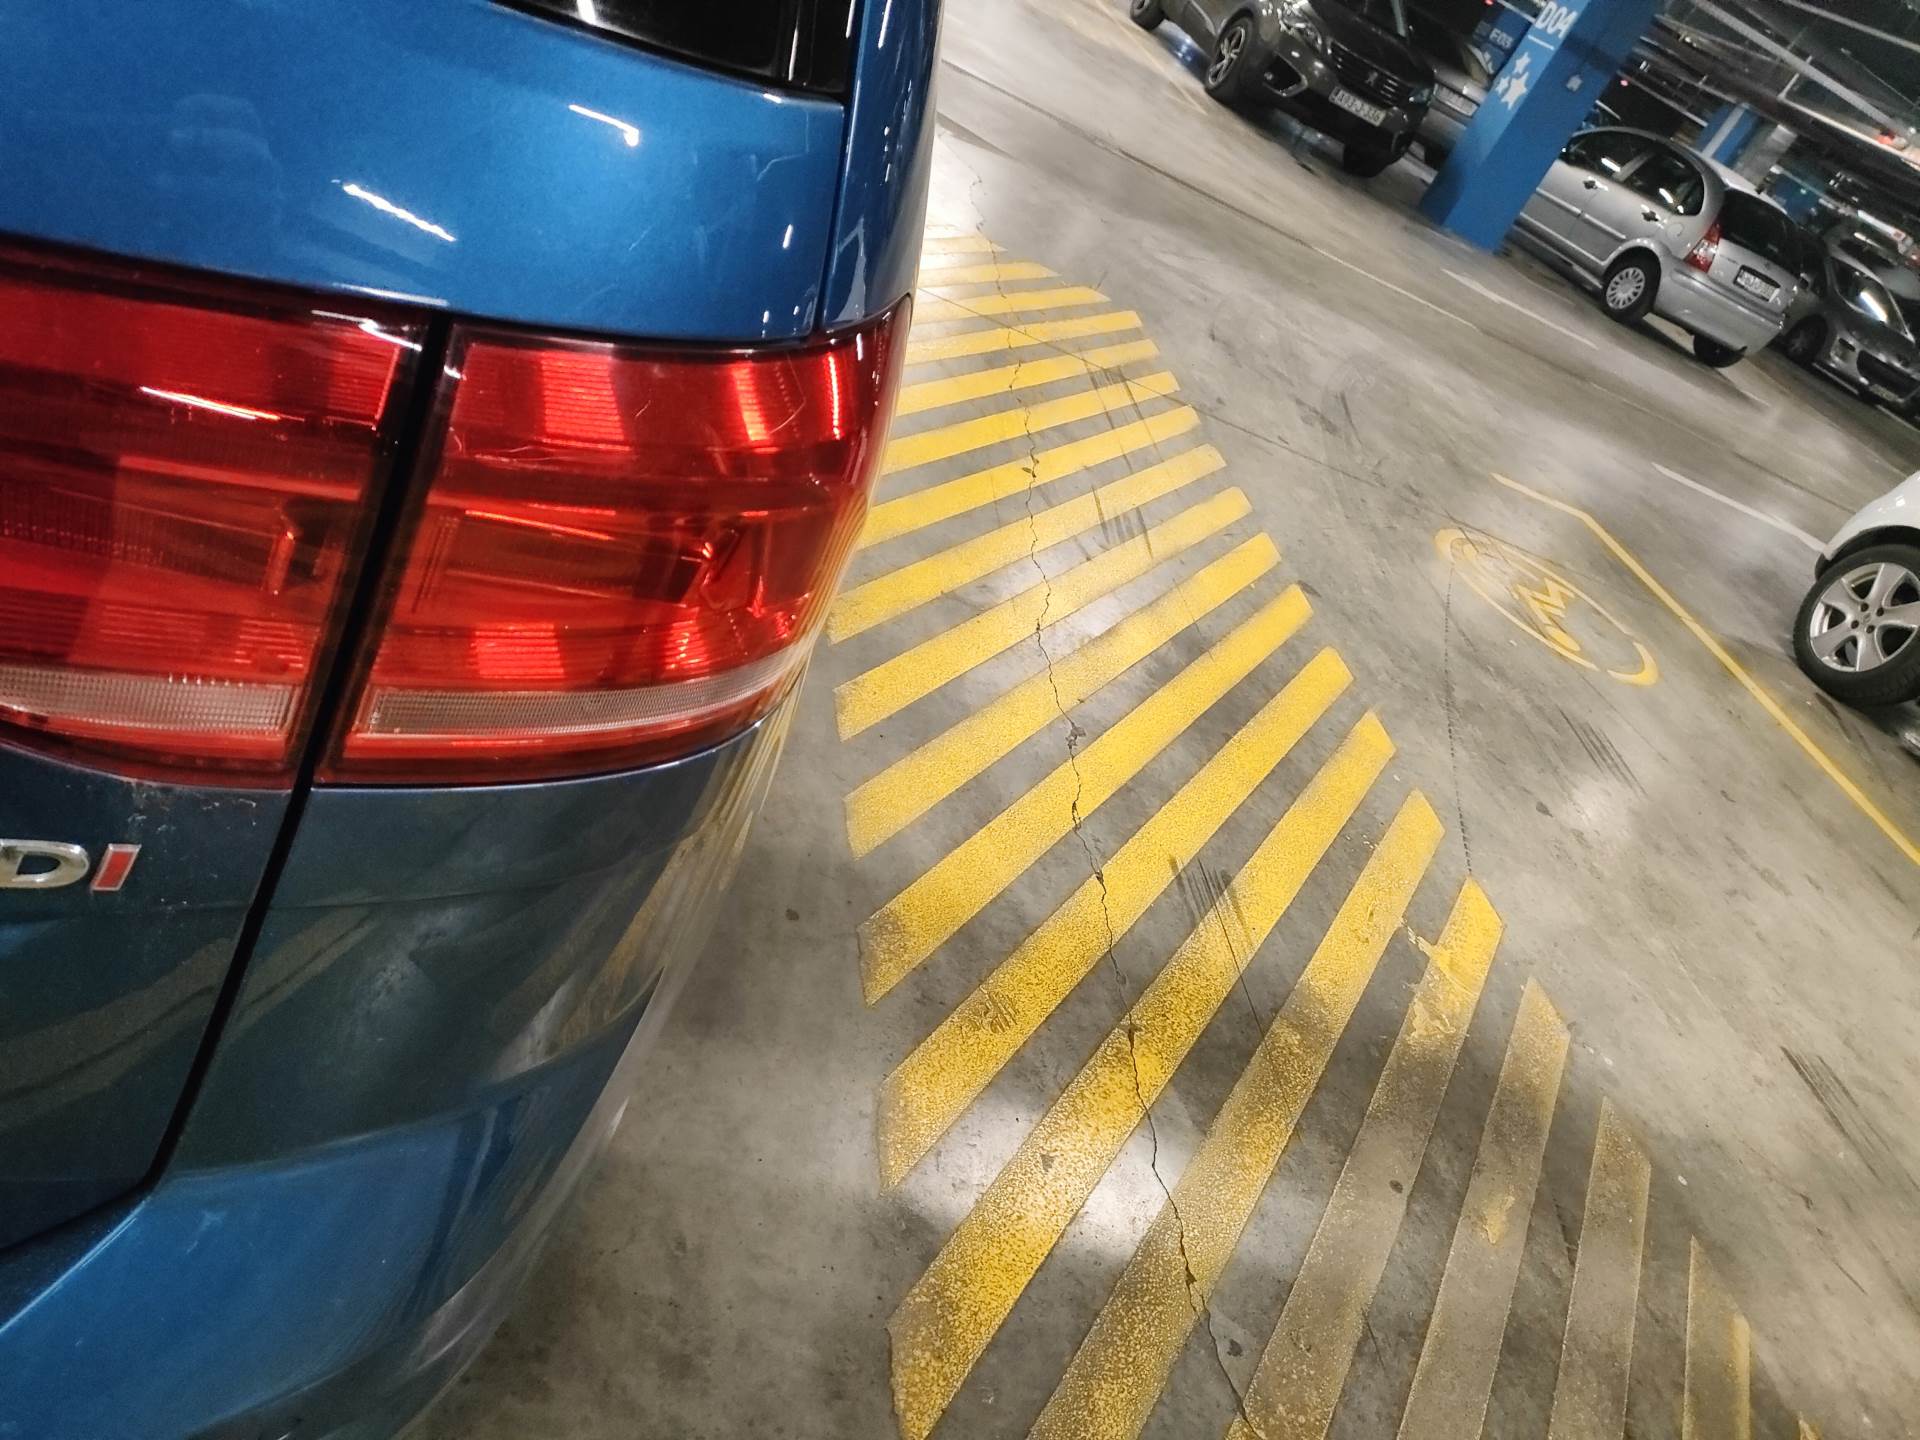  Parking na mjesta za osobe sa invaliditetom kazne Banjaluka 